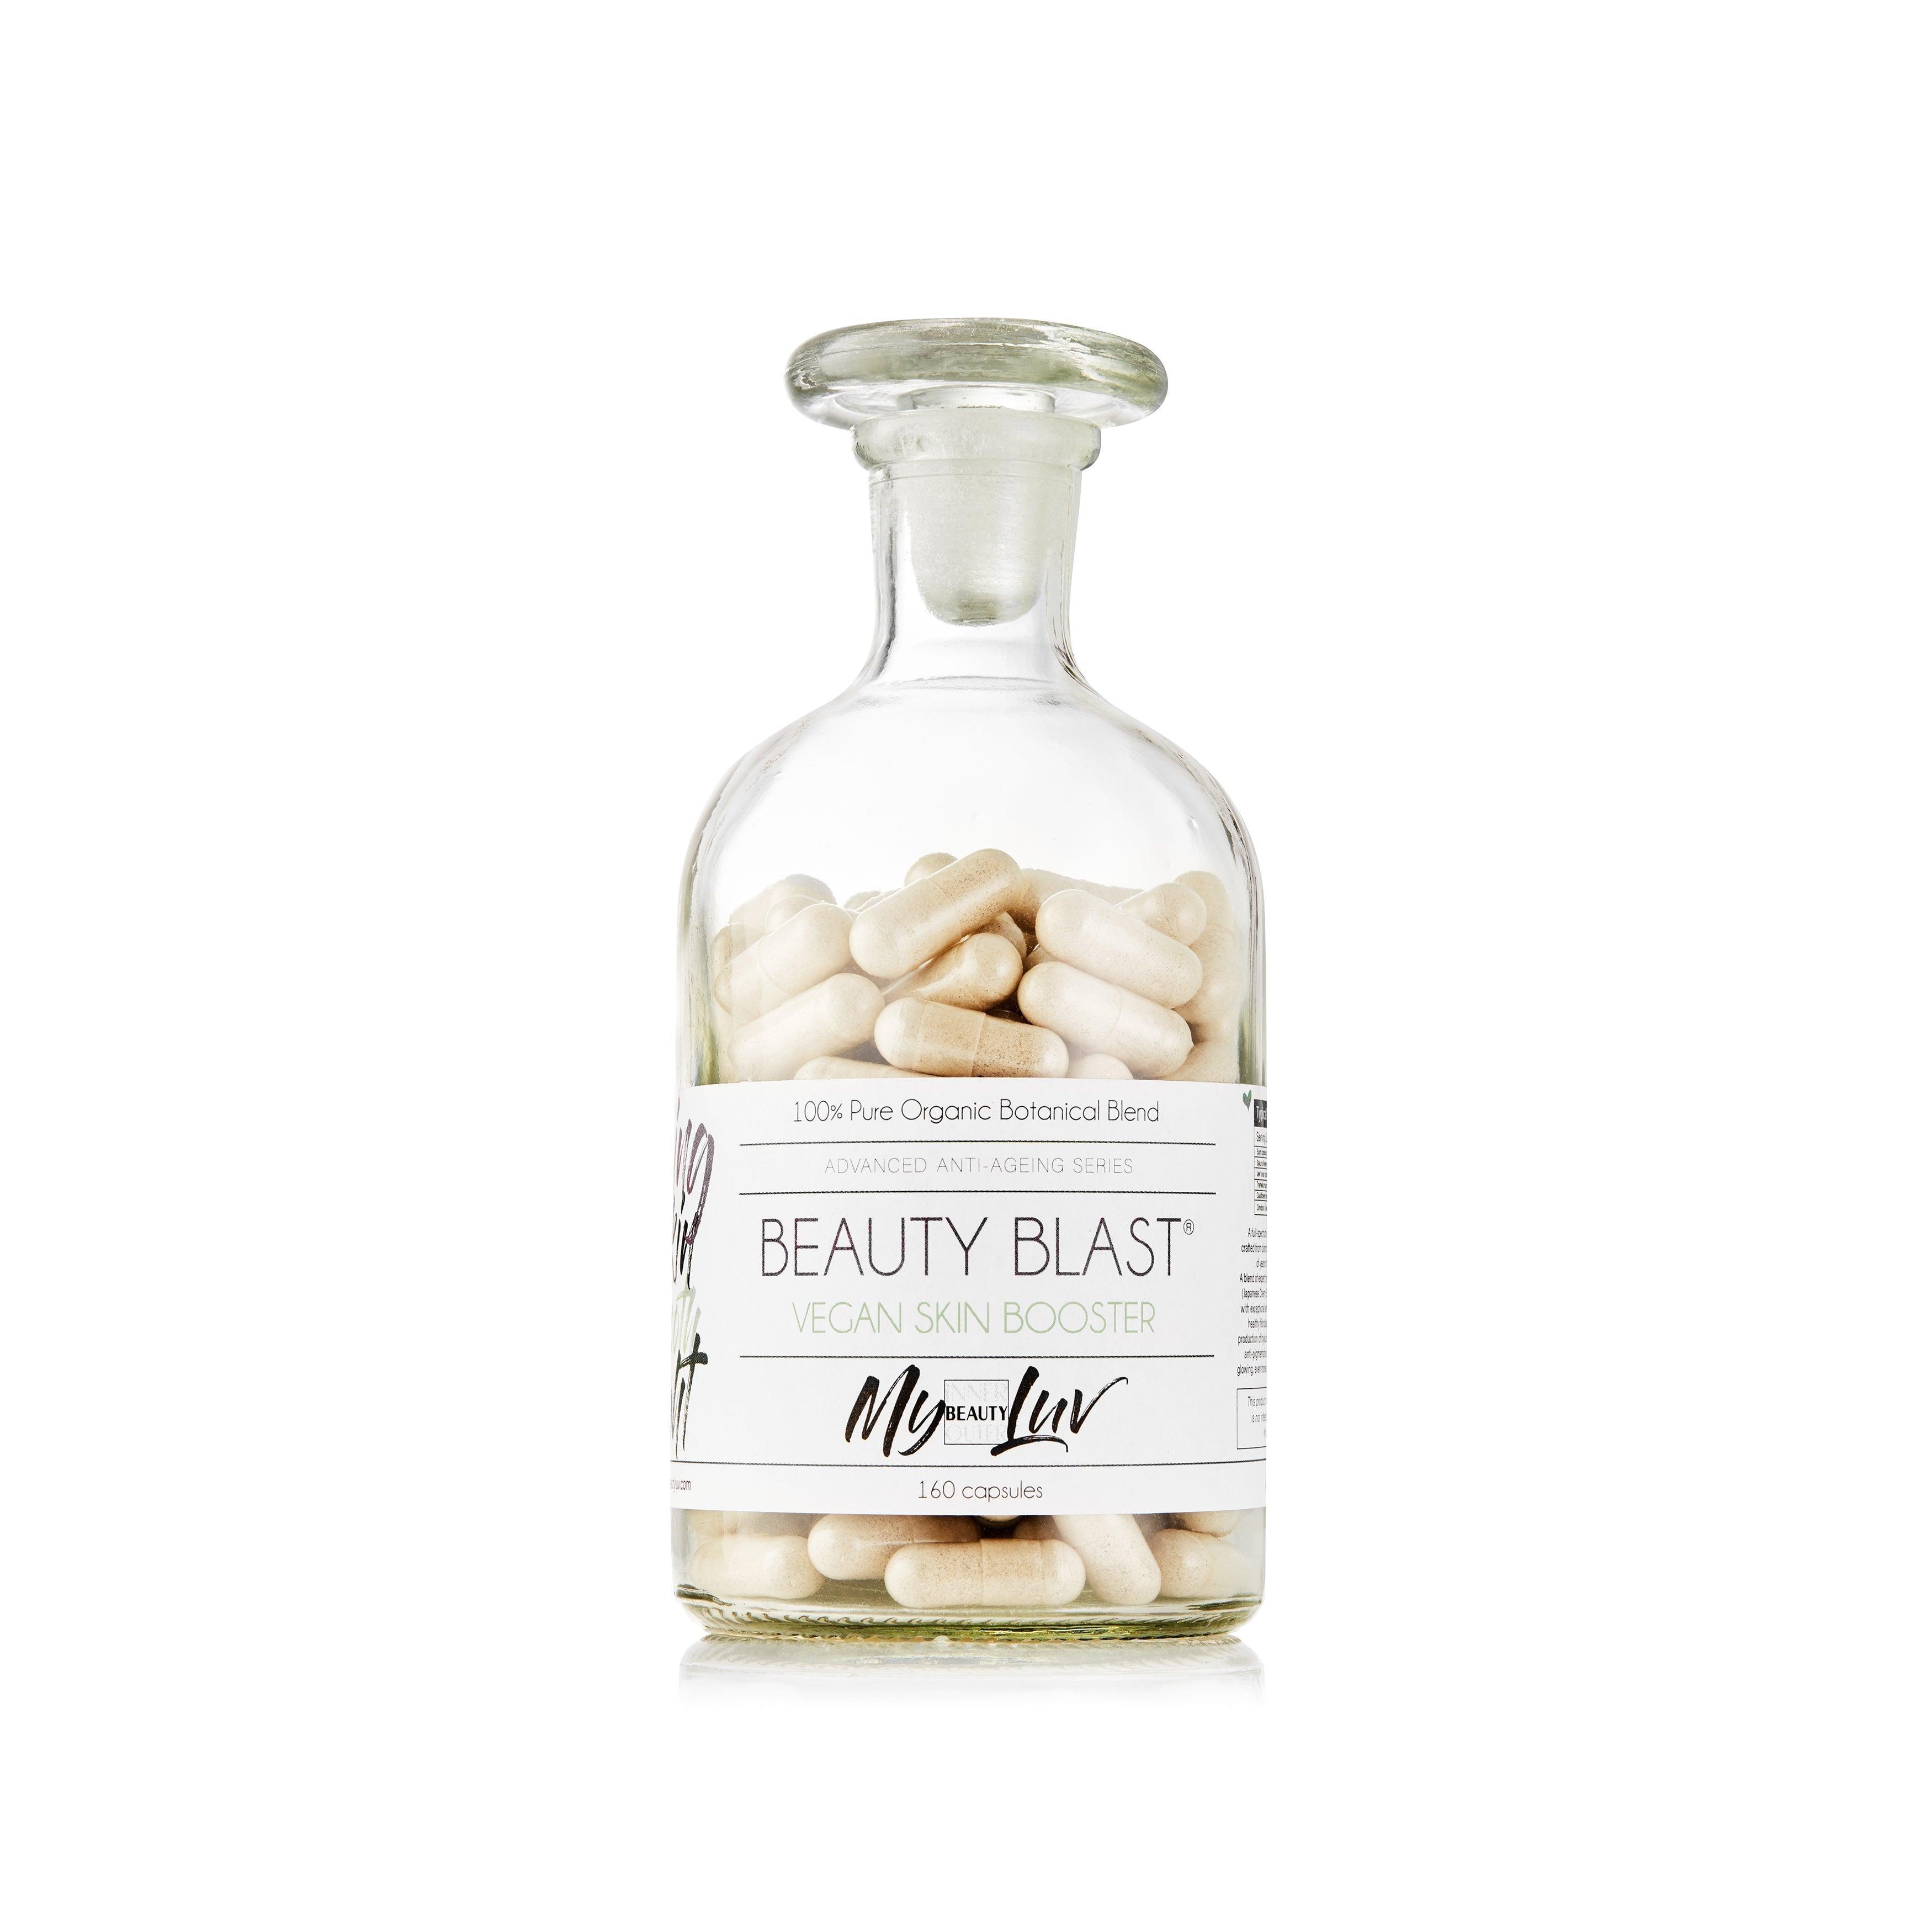 Beauty Blast® - My Beauty Luv